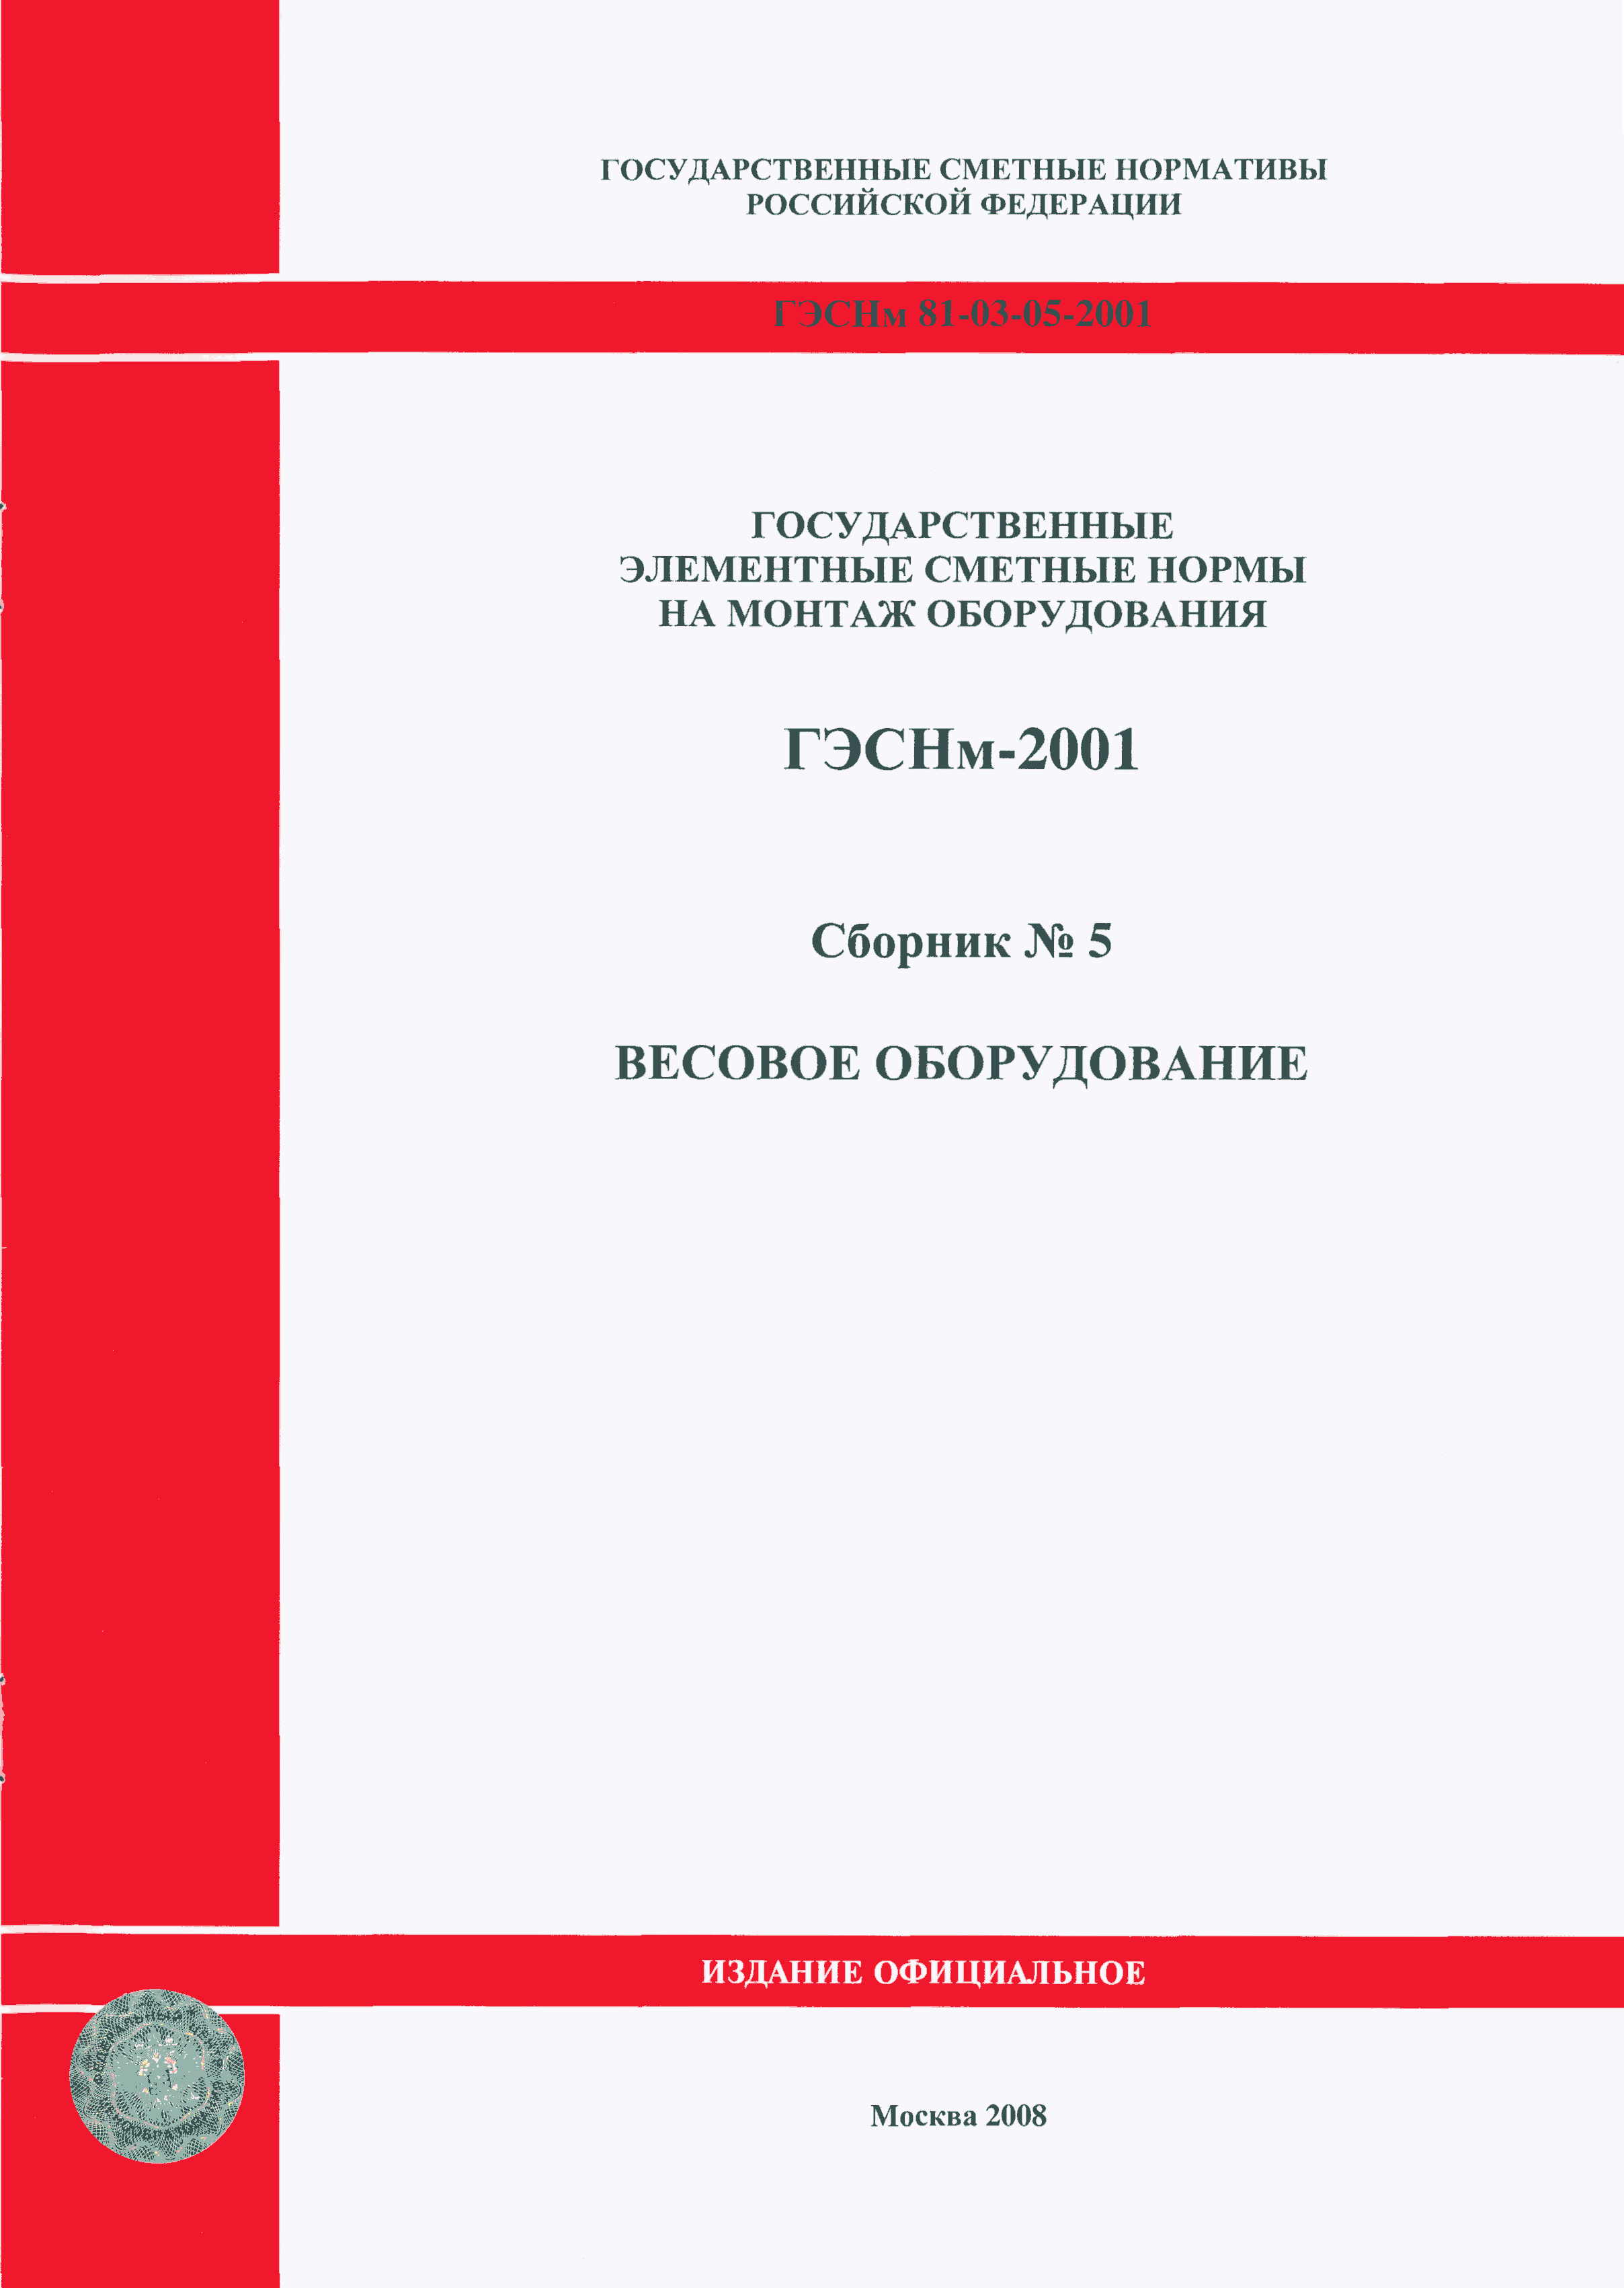 ГЭСНм 2001-05